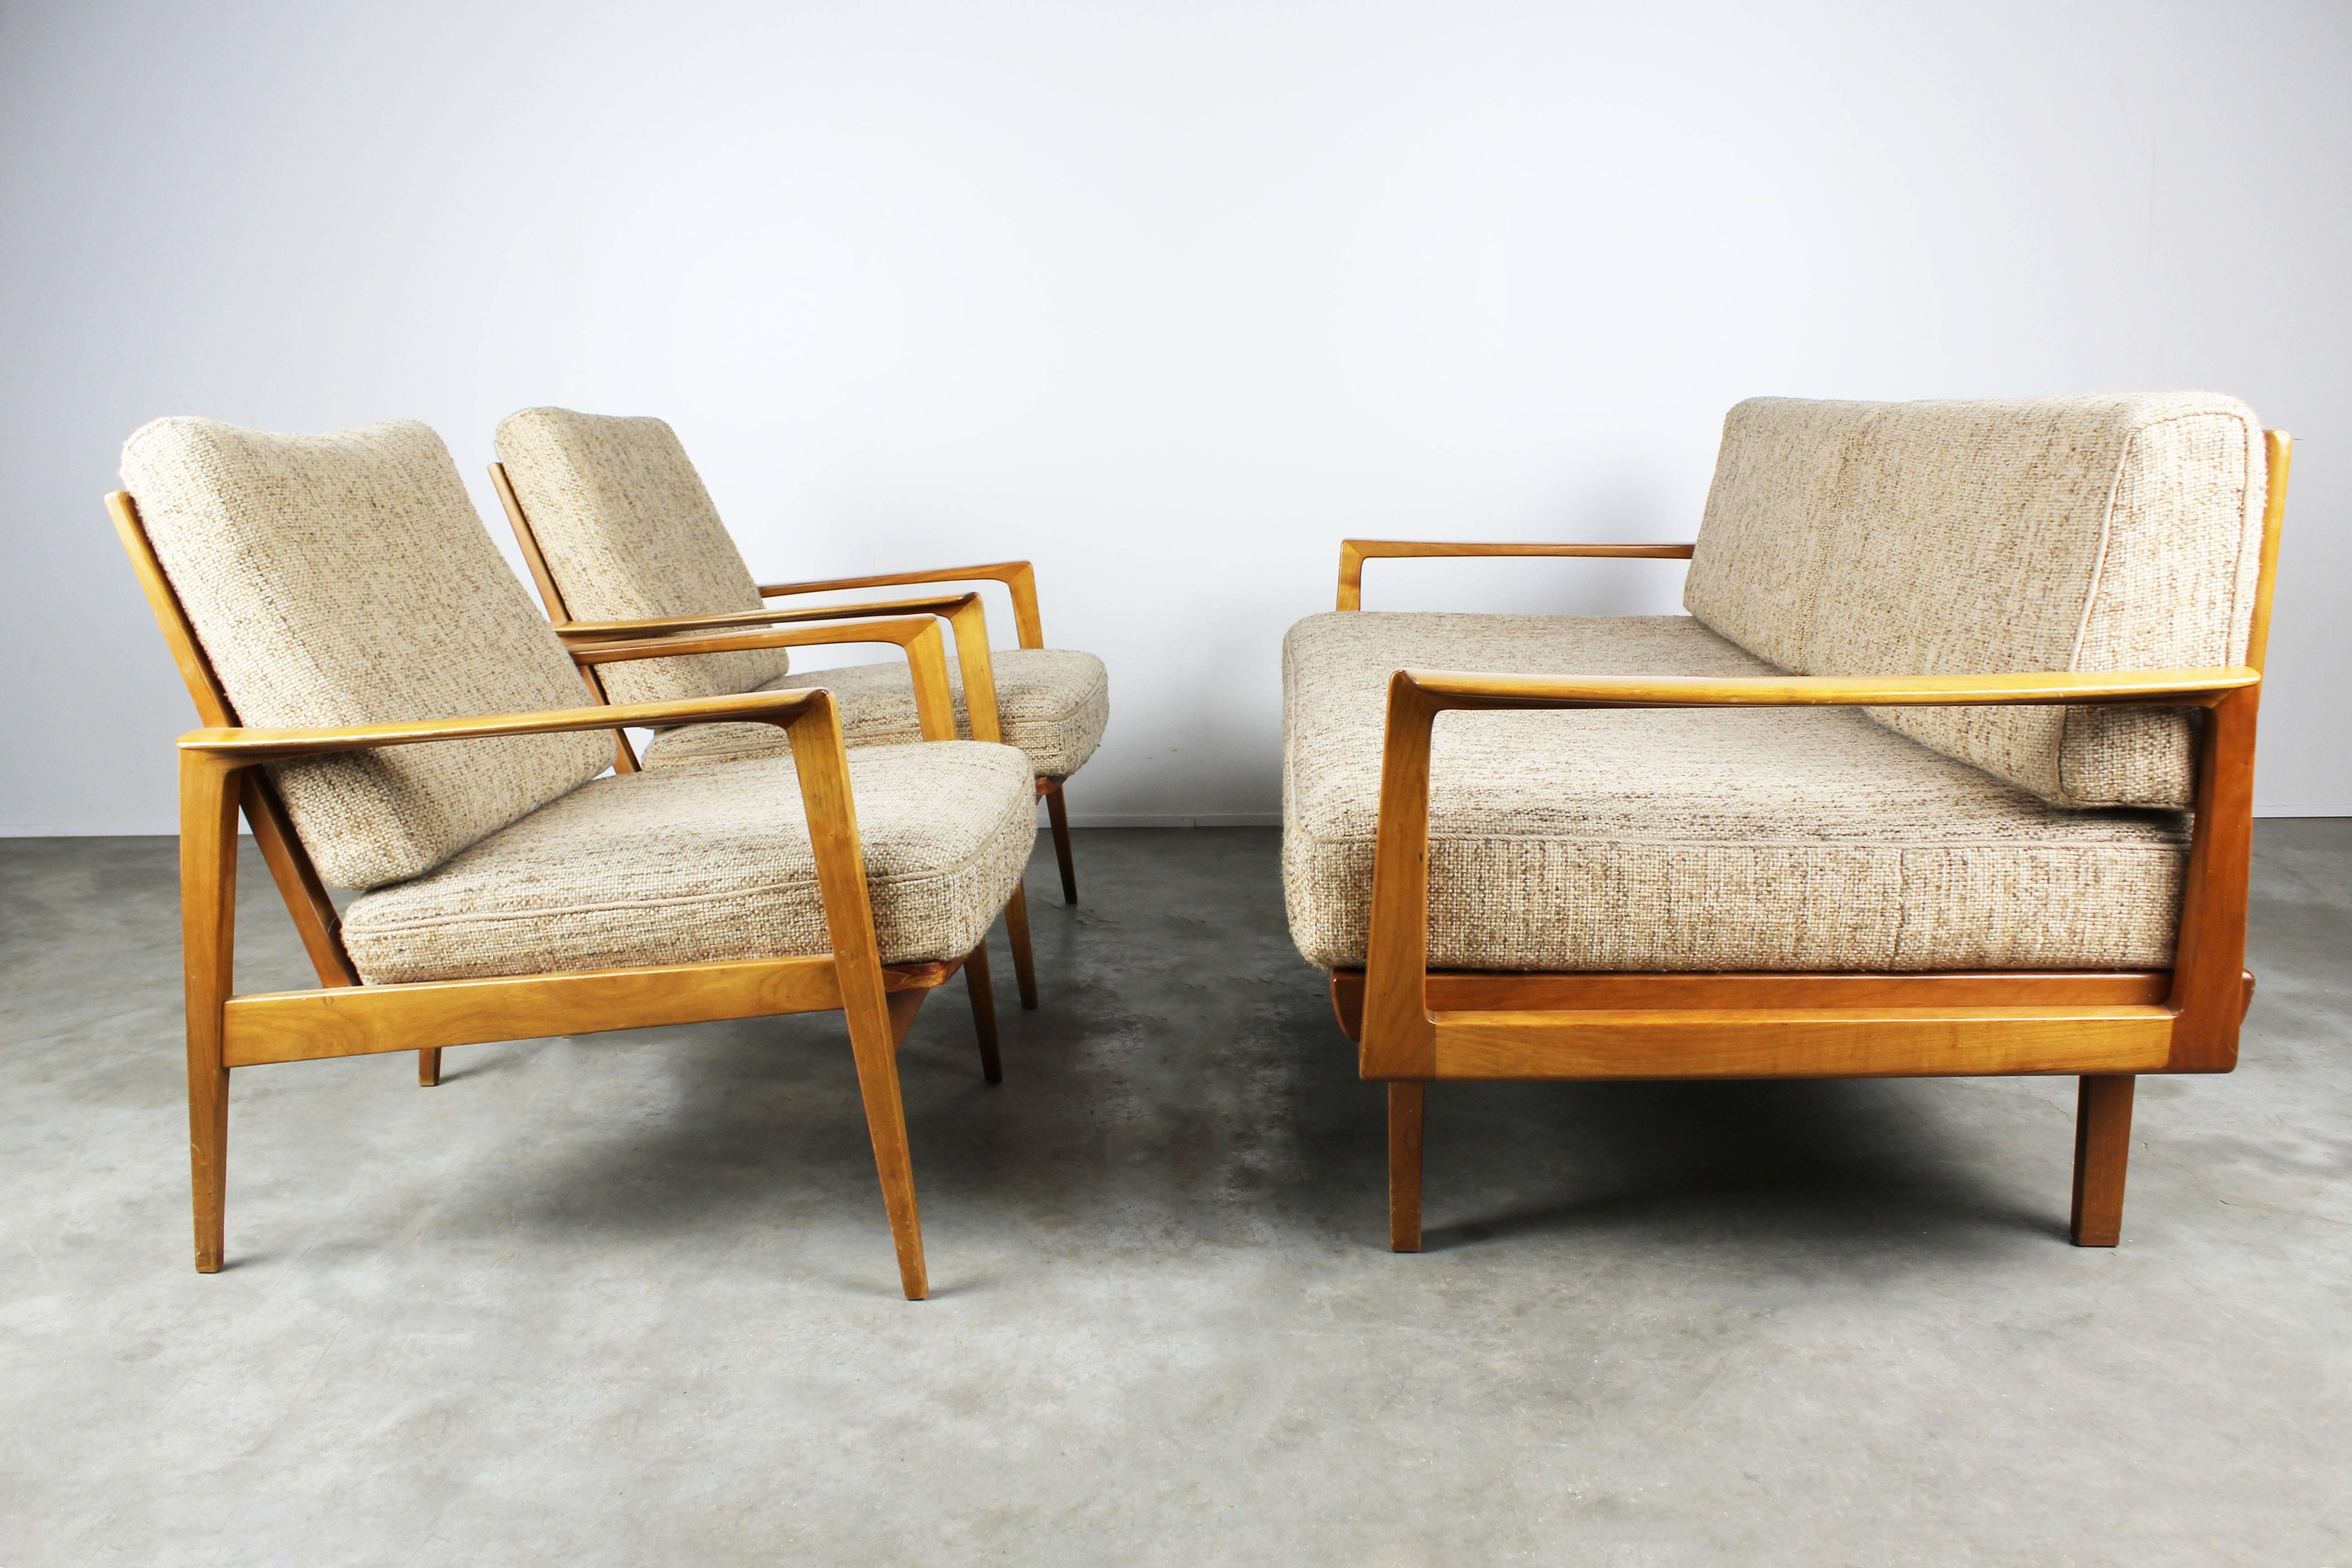 Seltene:: völlig originale Wohnzimmergarnitur mit zwei Sesseln und Magic Sofa / Schlafcouch von Knoll Antimott:: 1950. 
Das Sofa lässt sich in Sekundenschnelle in ein bequemes Daybed verwandeln. Wunderschönes Holzgestell und minimalistische